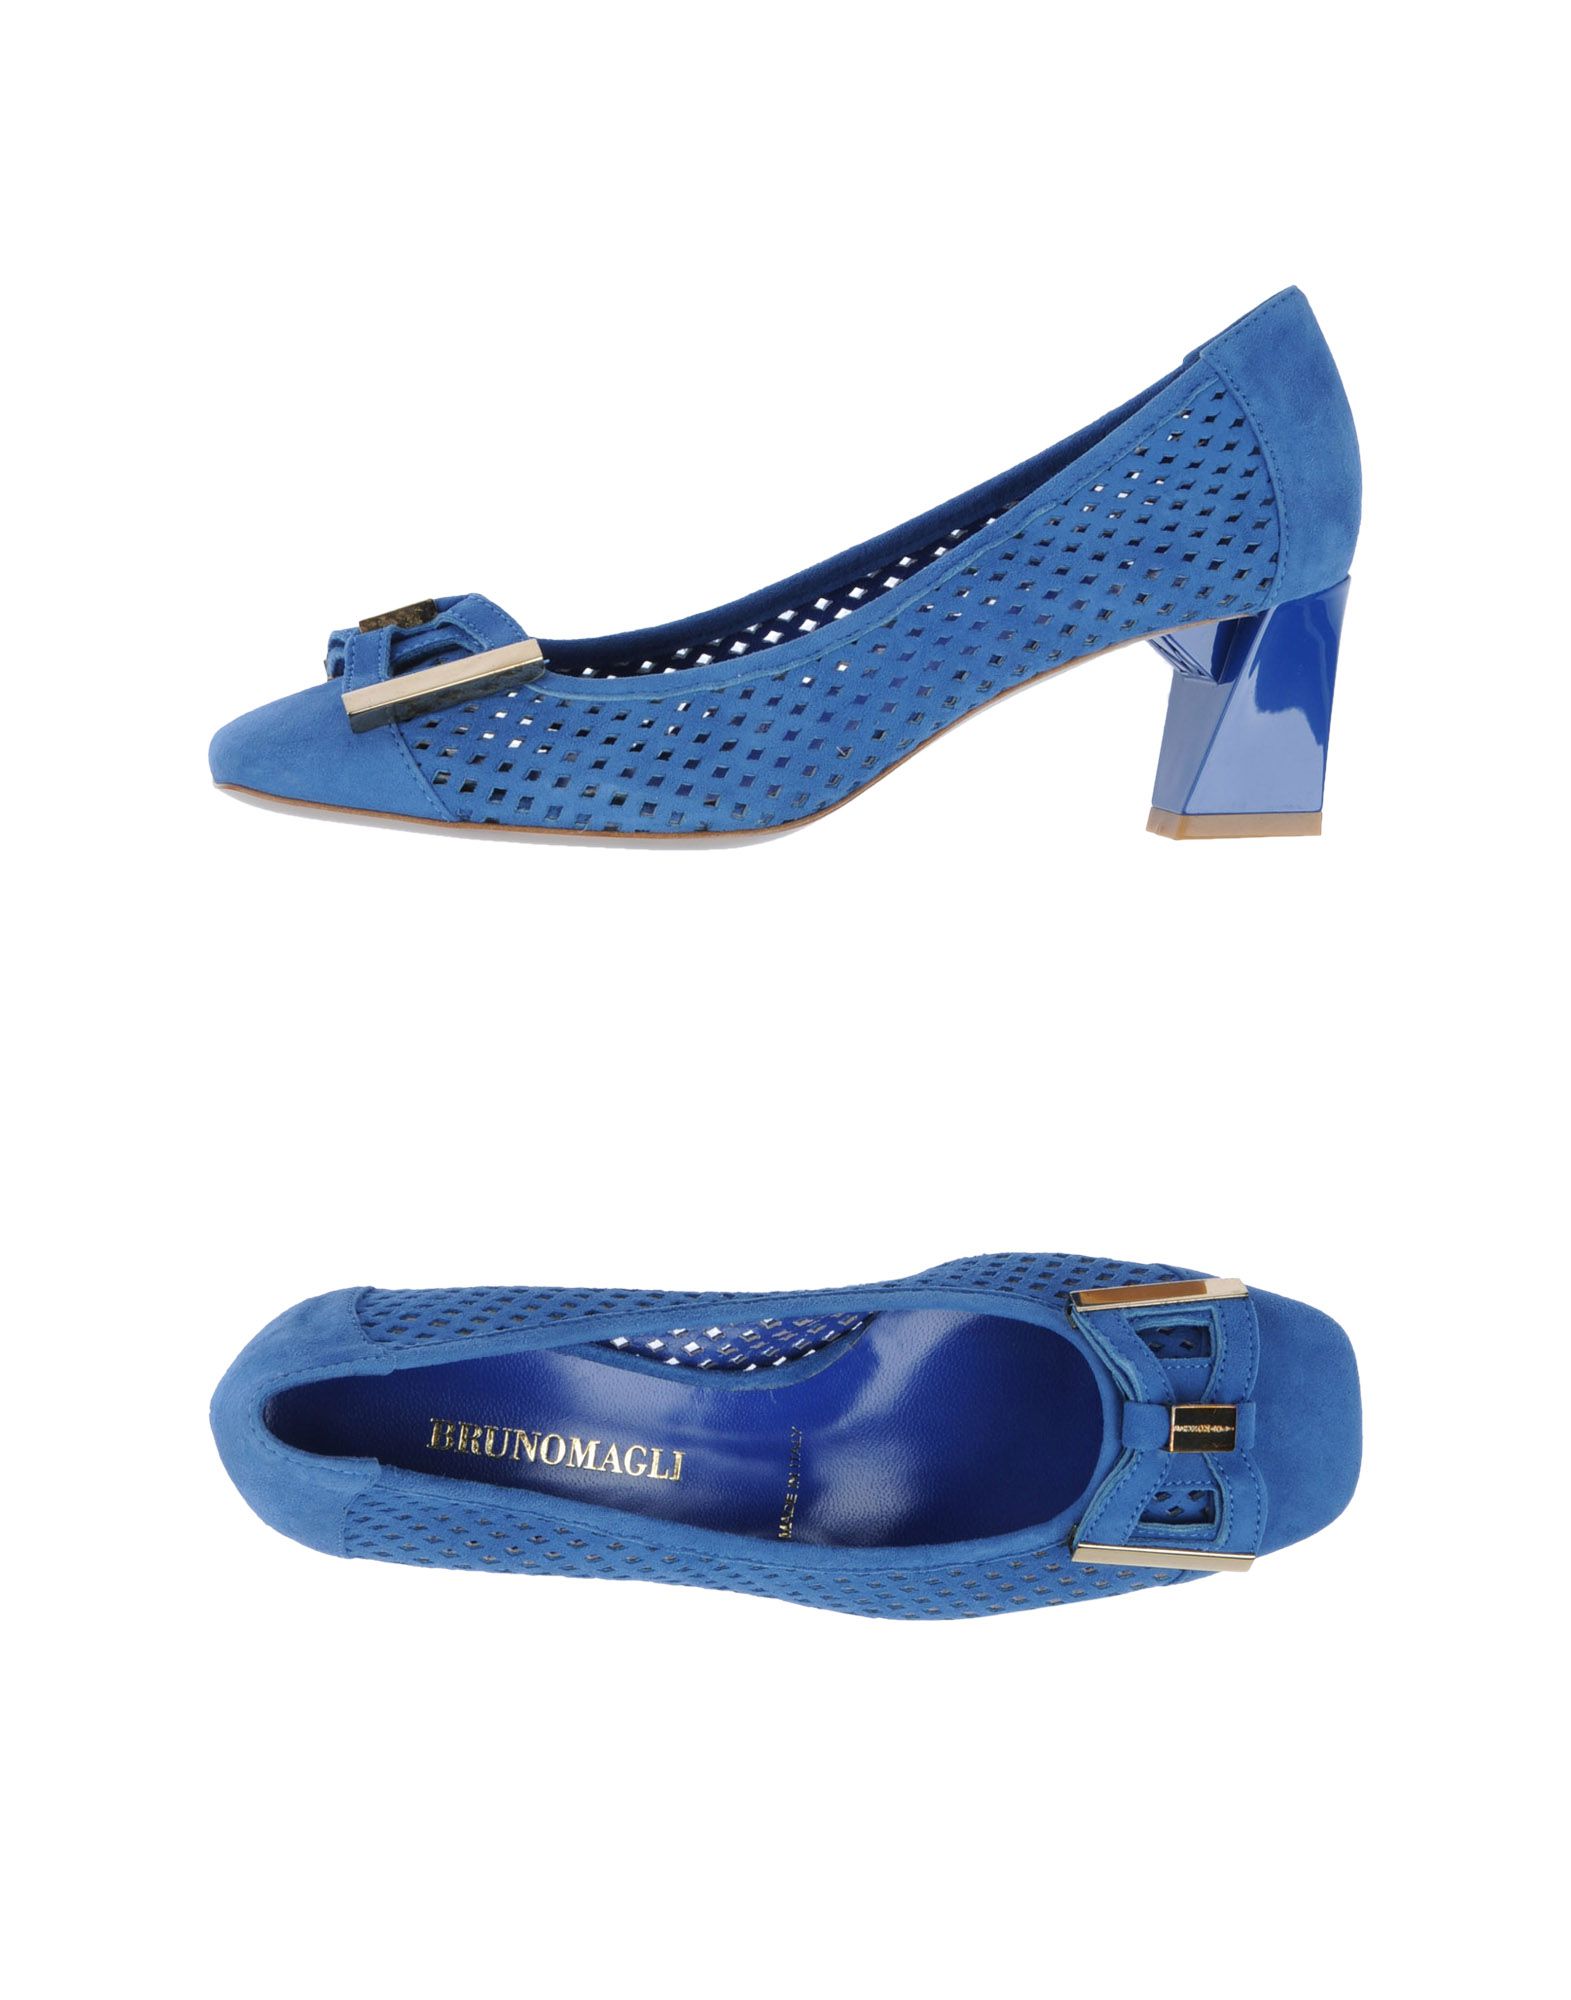 Foto bruno magli zapatos de salón Mujer Azul marino foto 575591